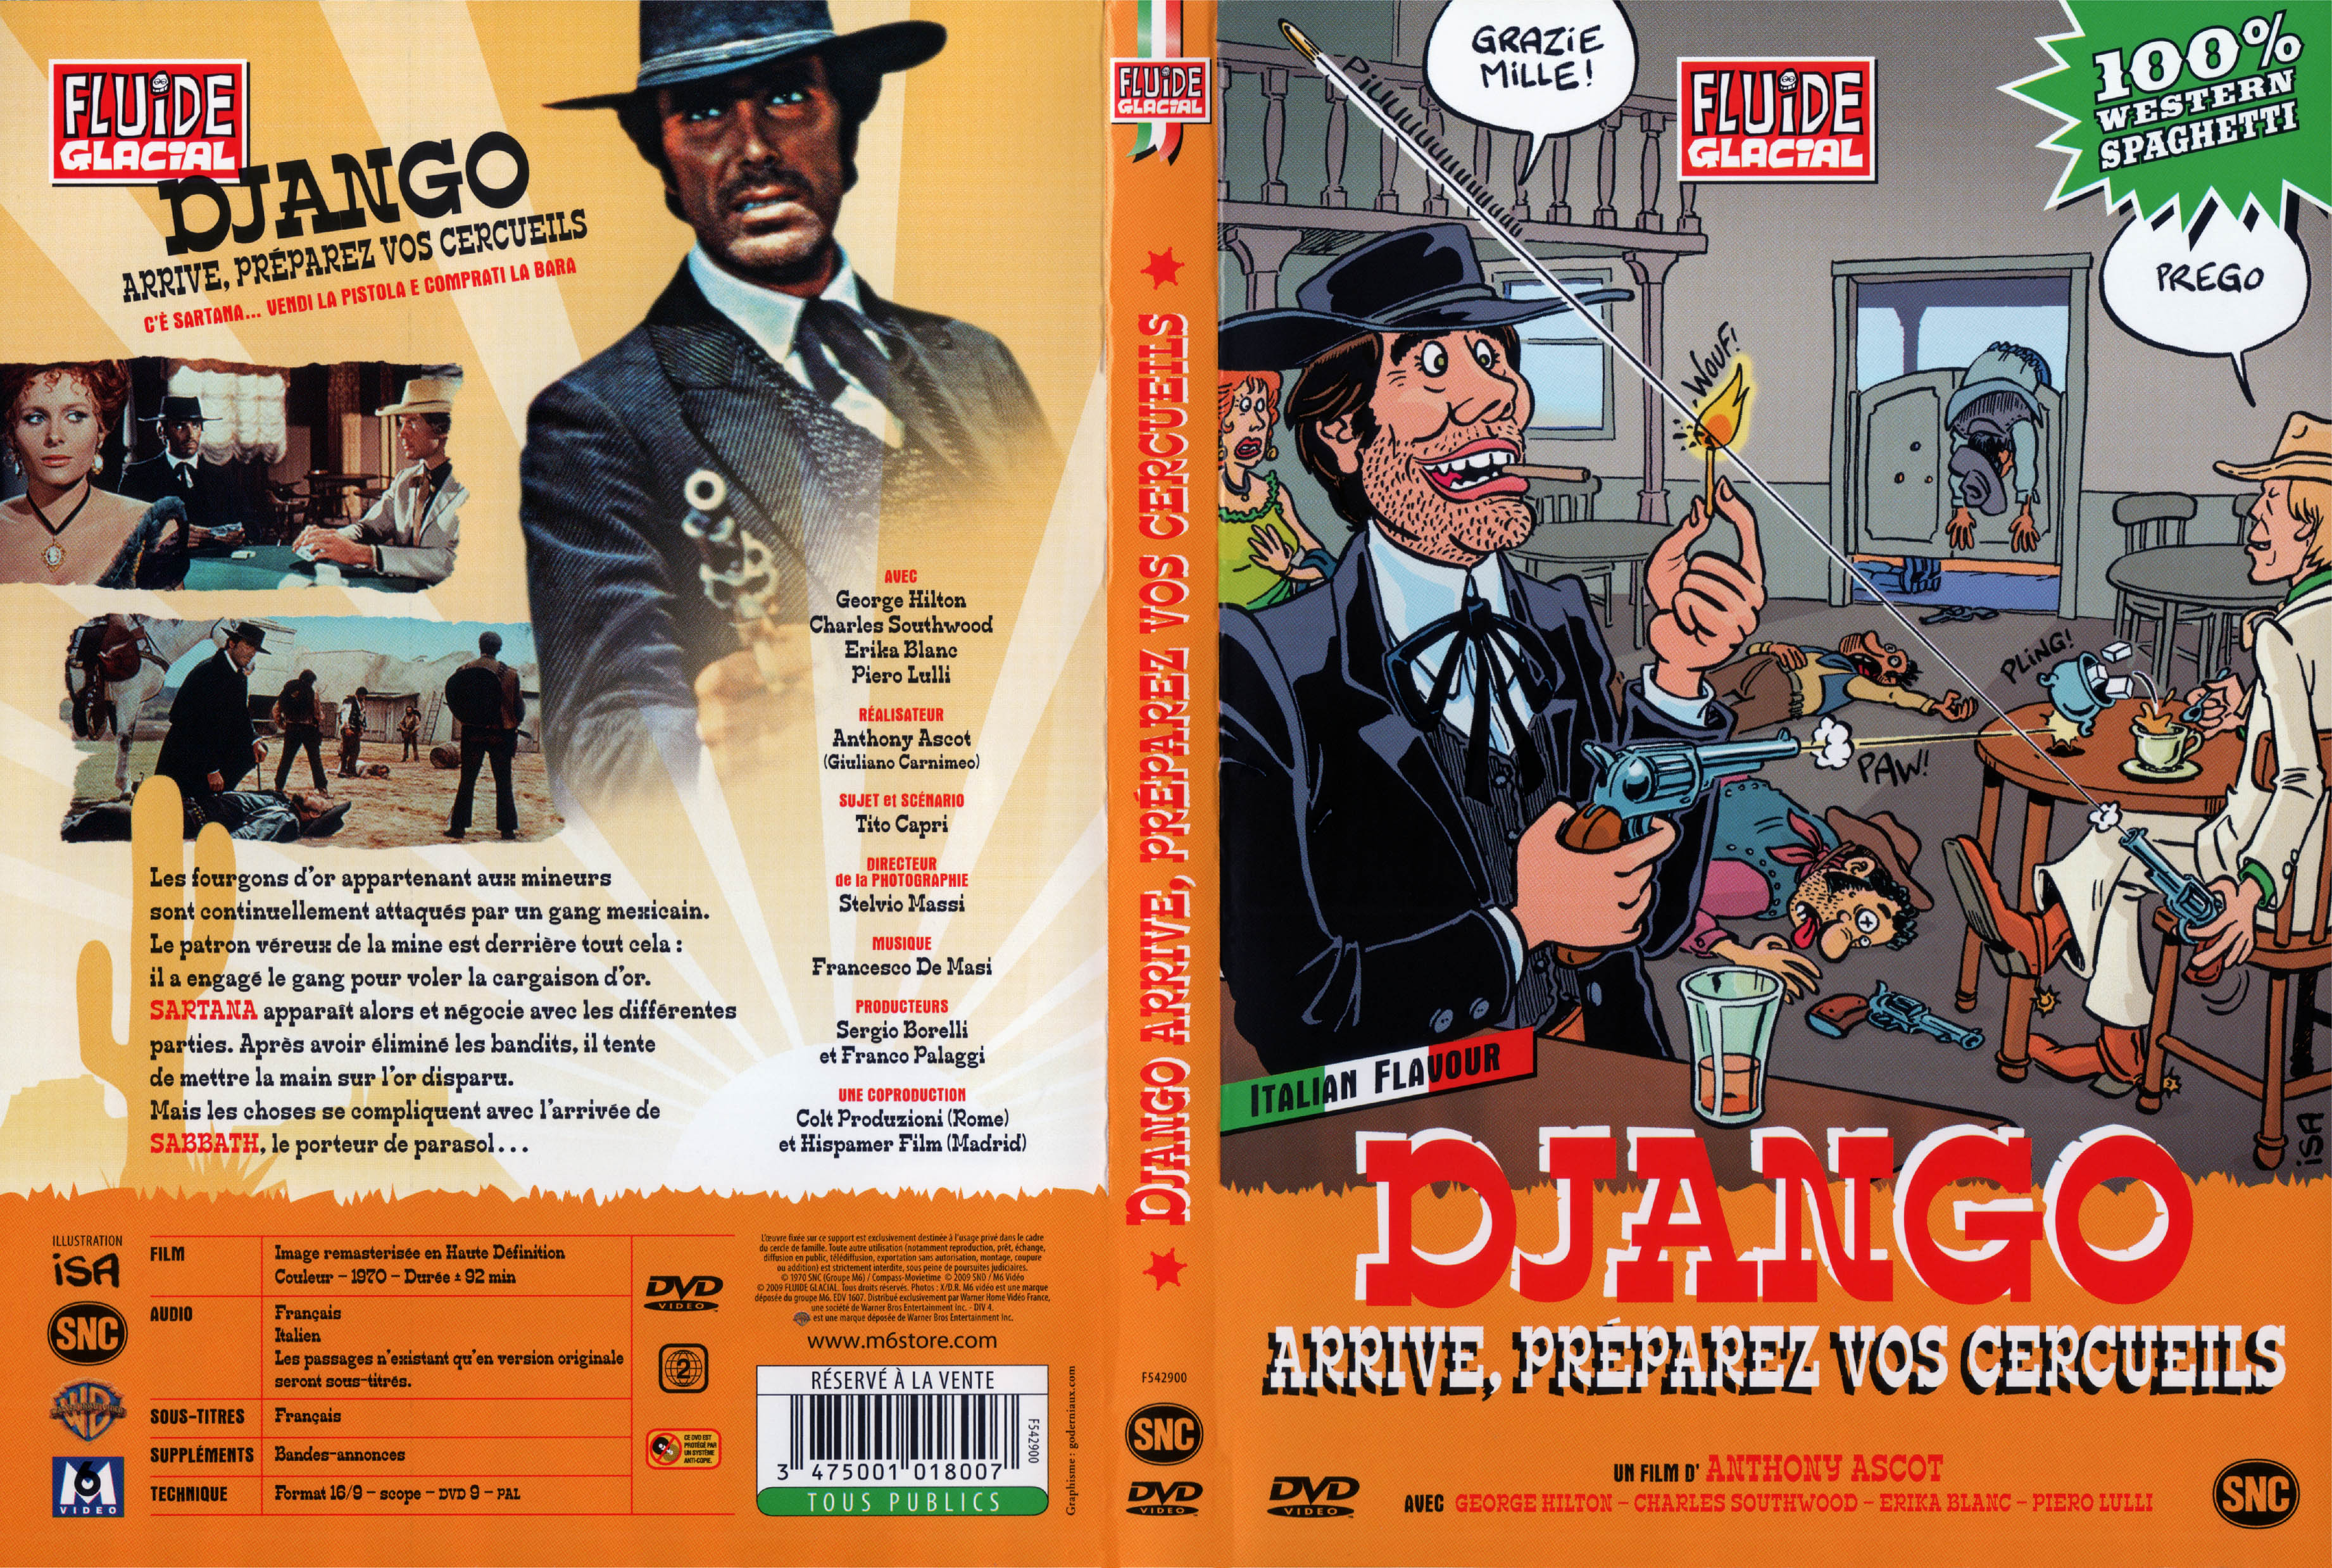 Jaquette DVD Django arrive preparez vos cercueils